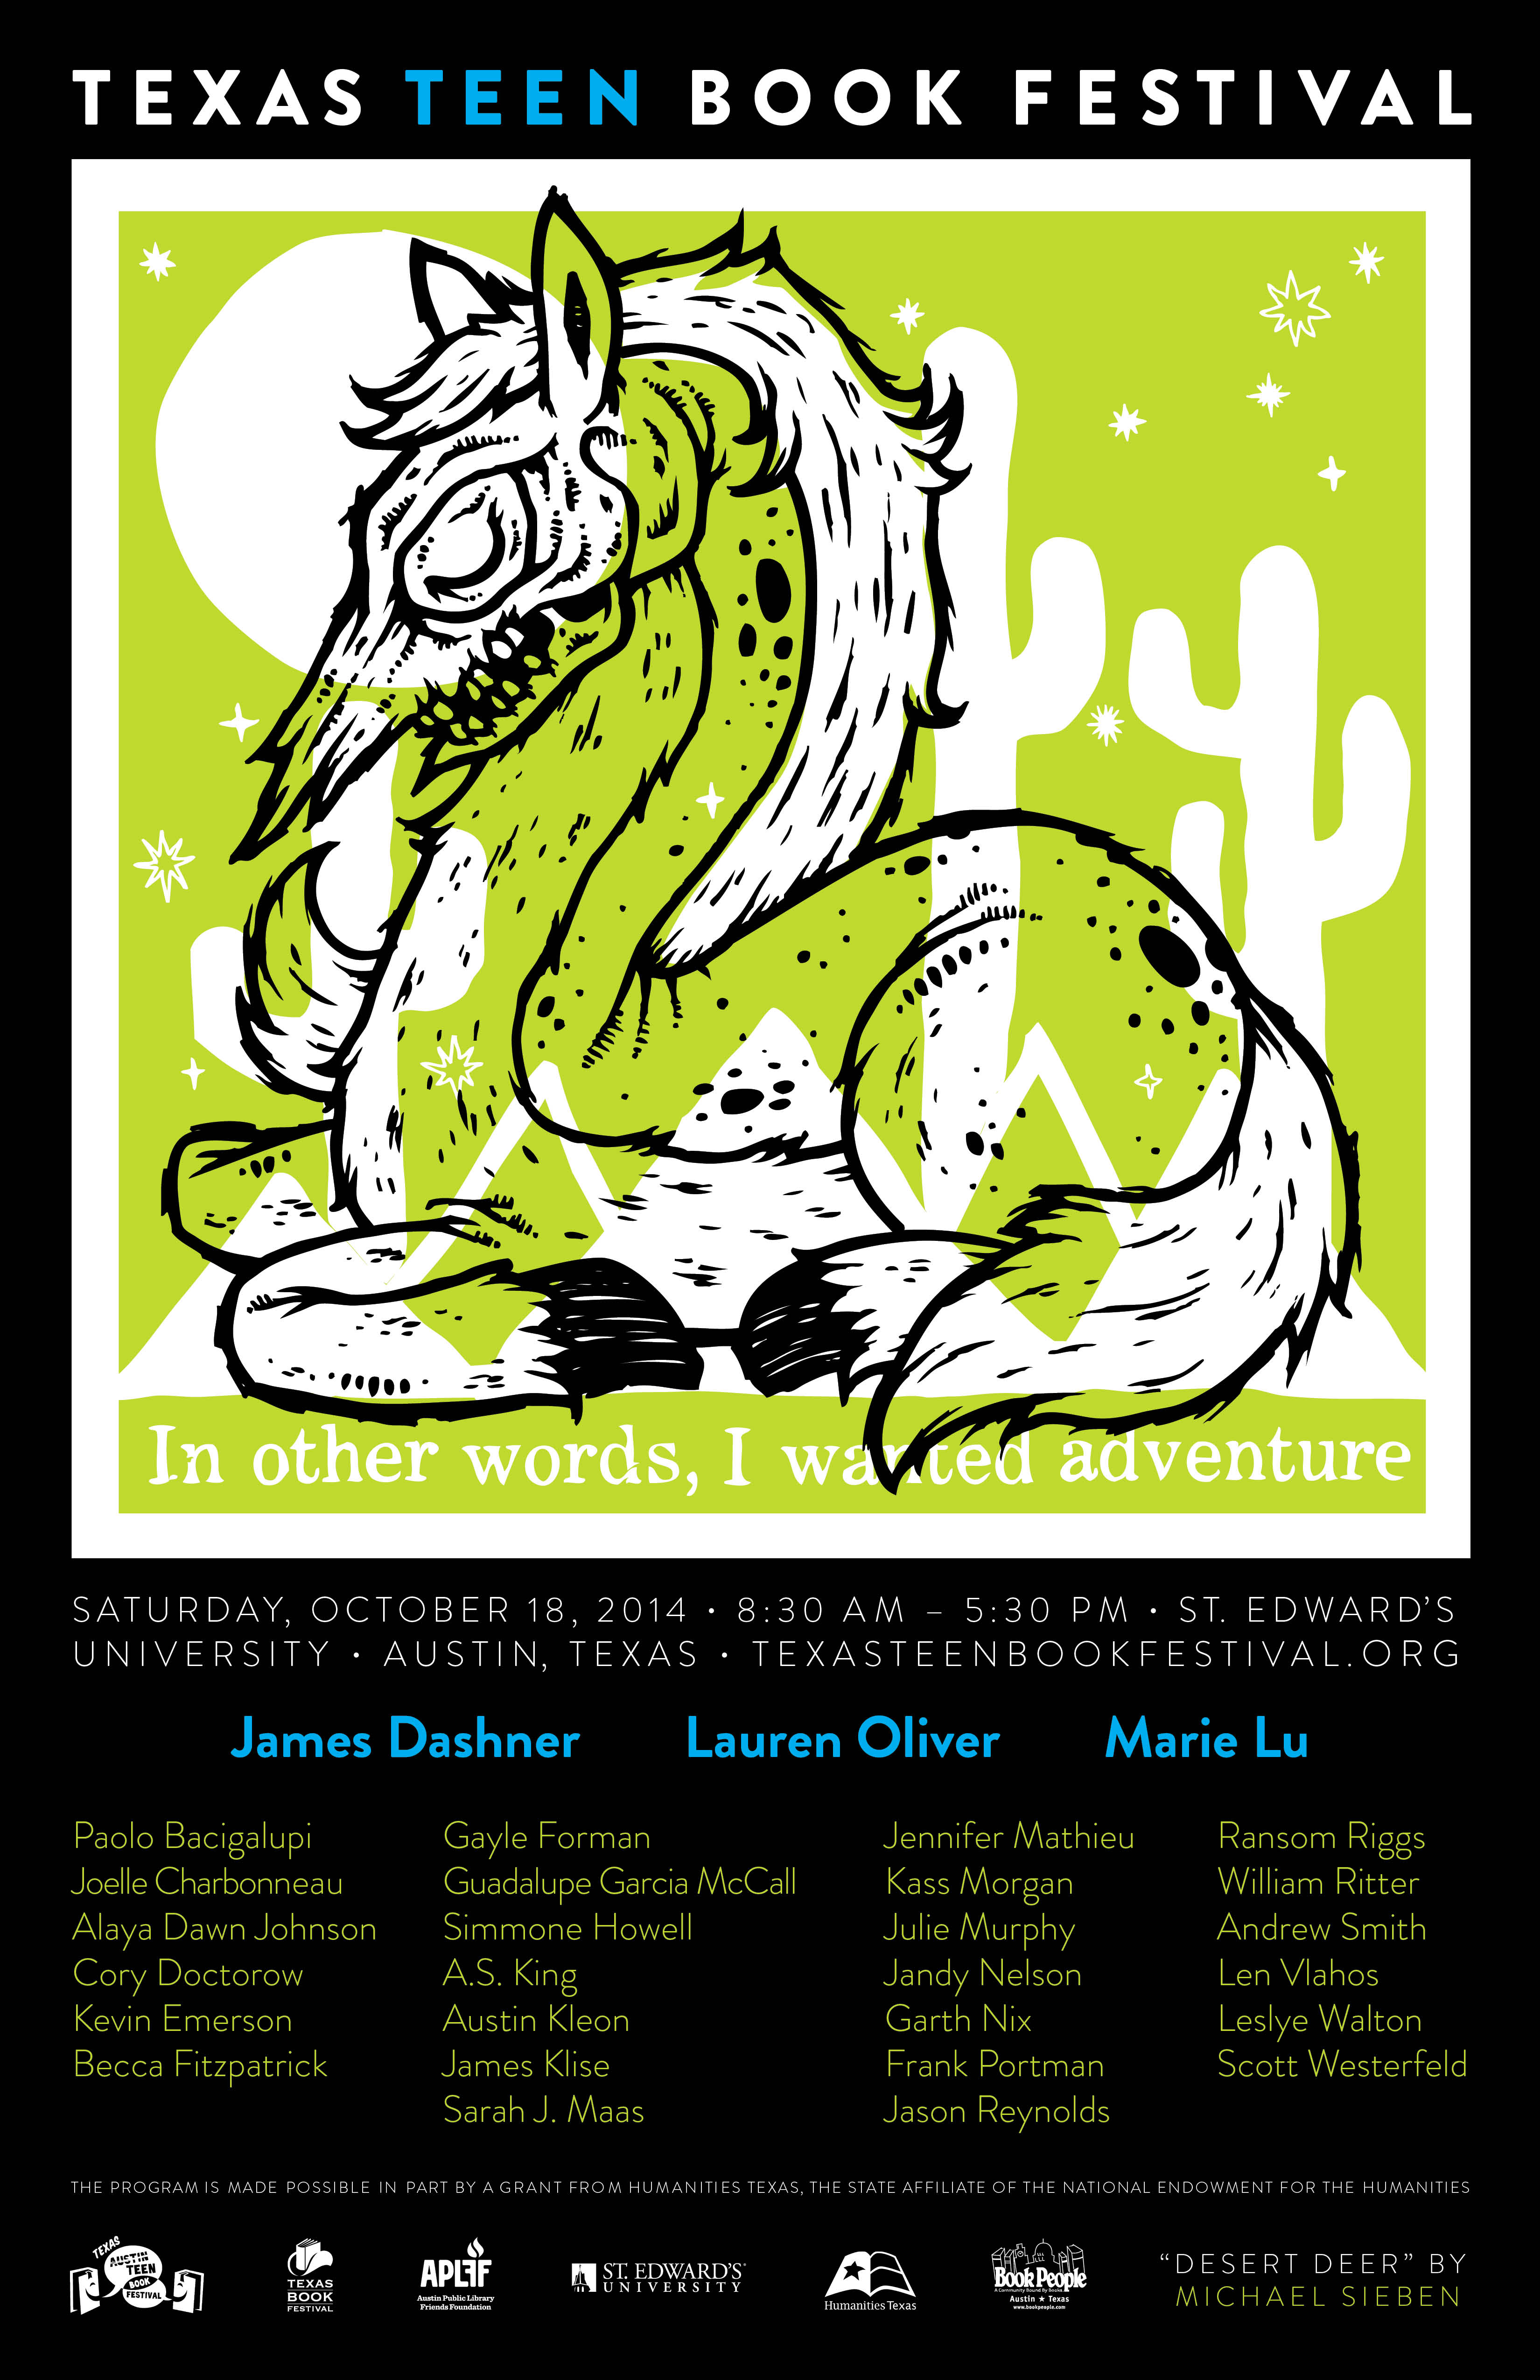 http://texasteenbookfestival.org/wp-content/uploads/2014/06/TTBF-2014-Poster-1.jpg